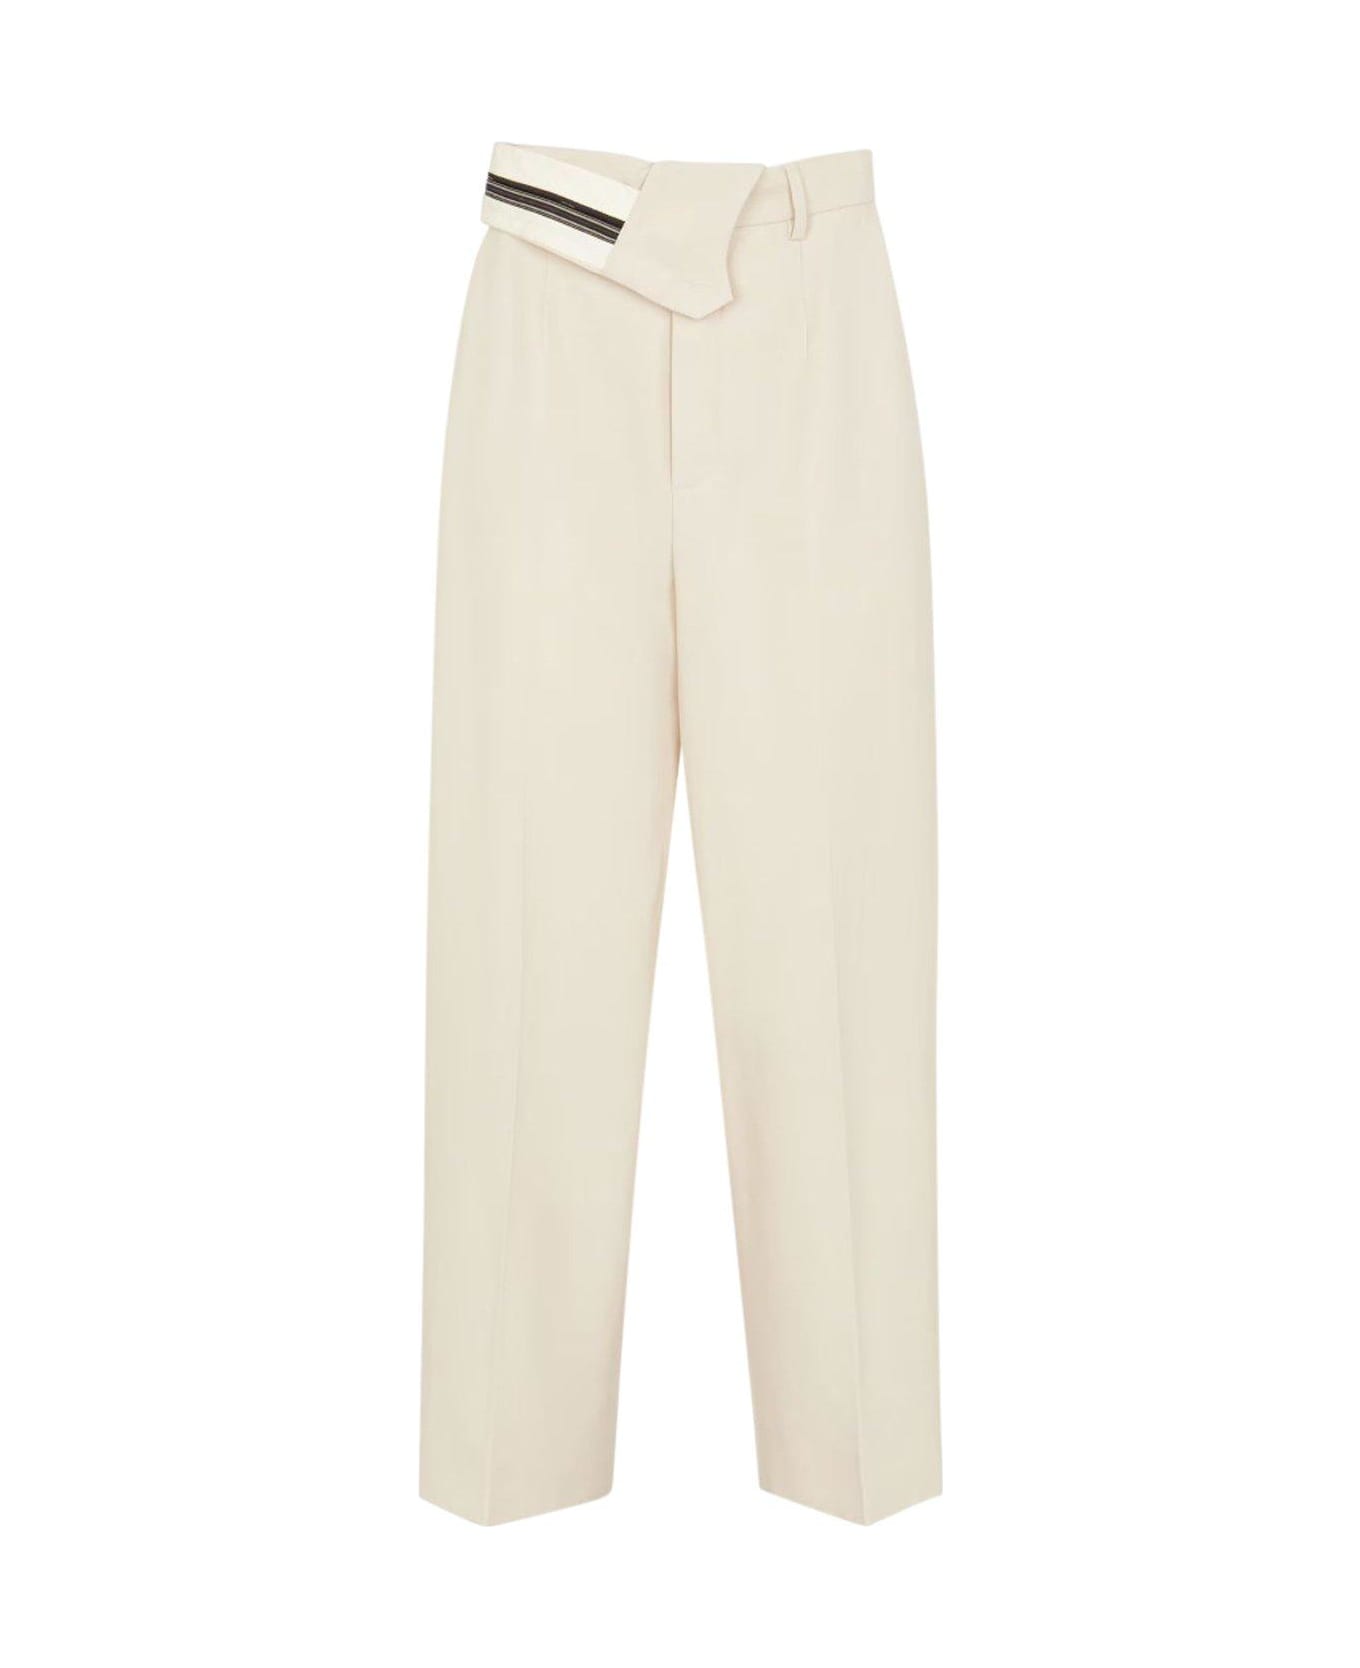 Fendi Pantalone Wool Cotton Trousers - Shell ボトムス